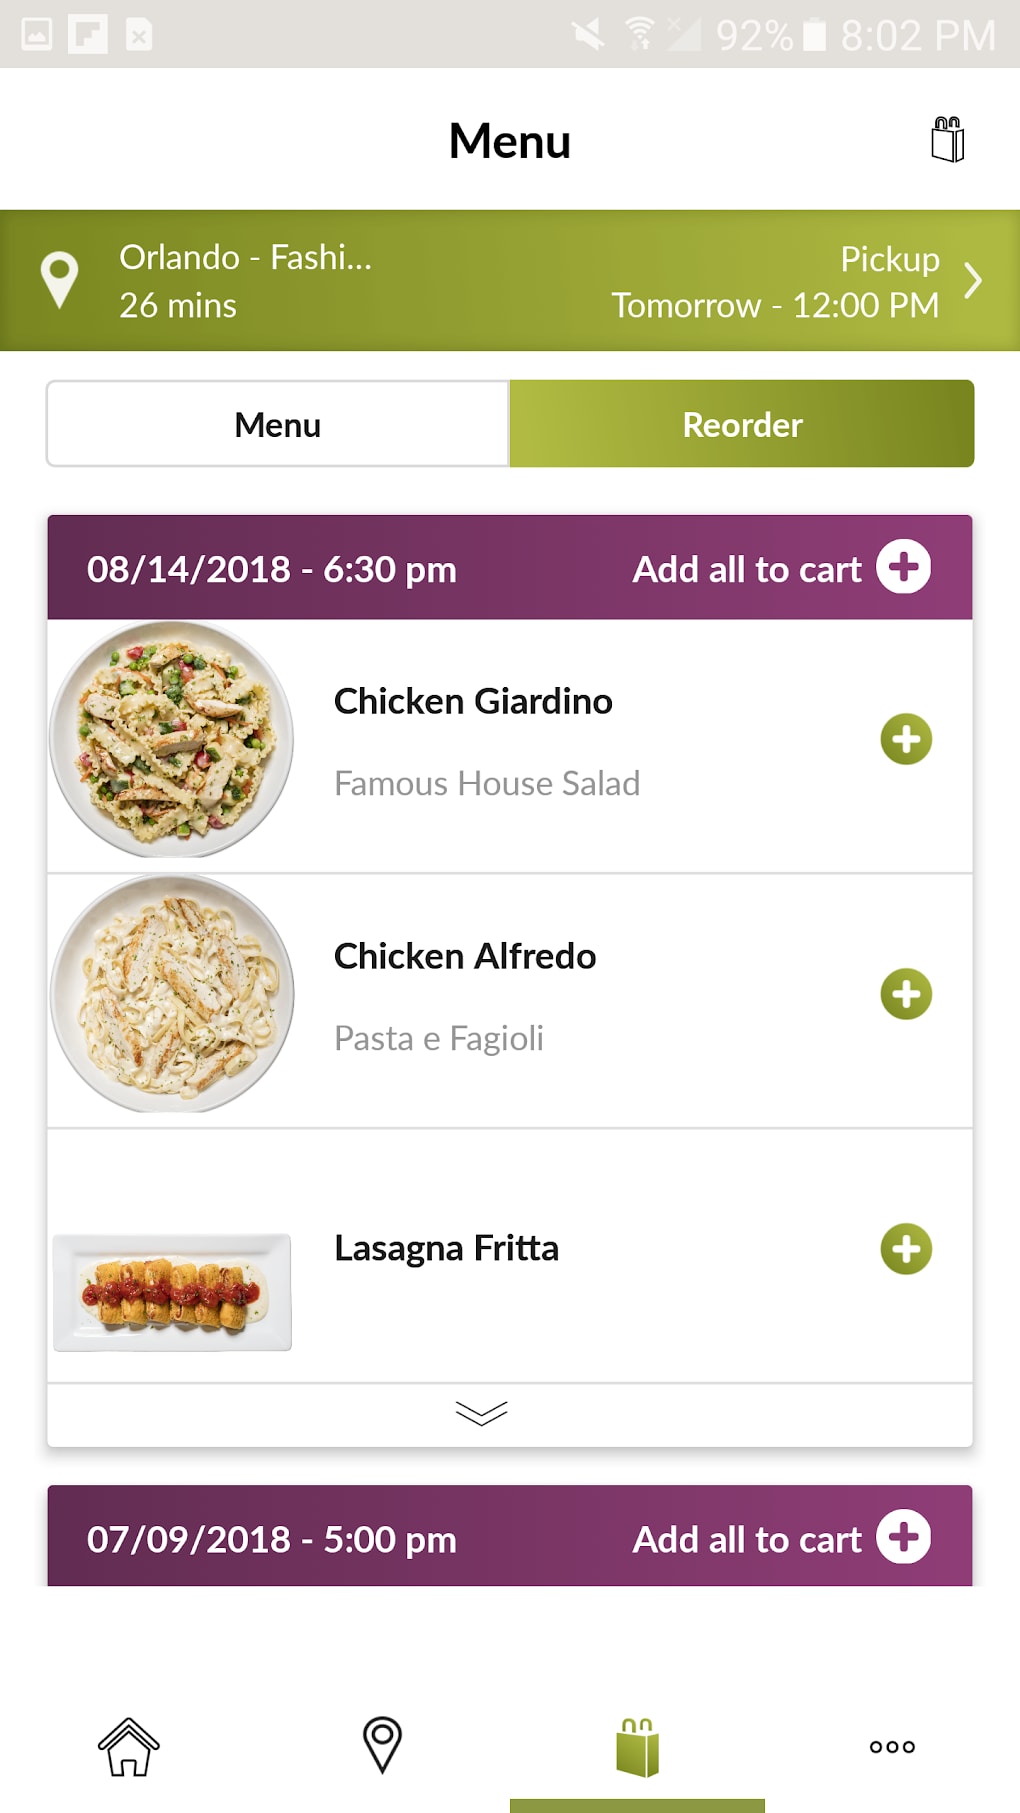 Download Olive Garden's Mobile App